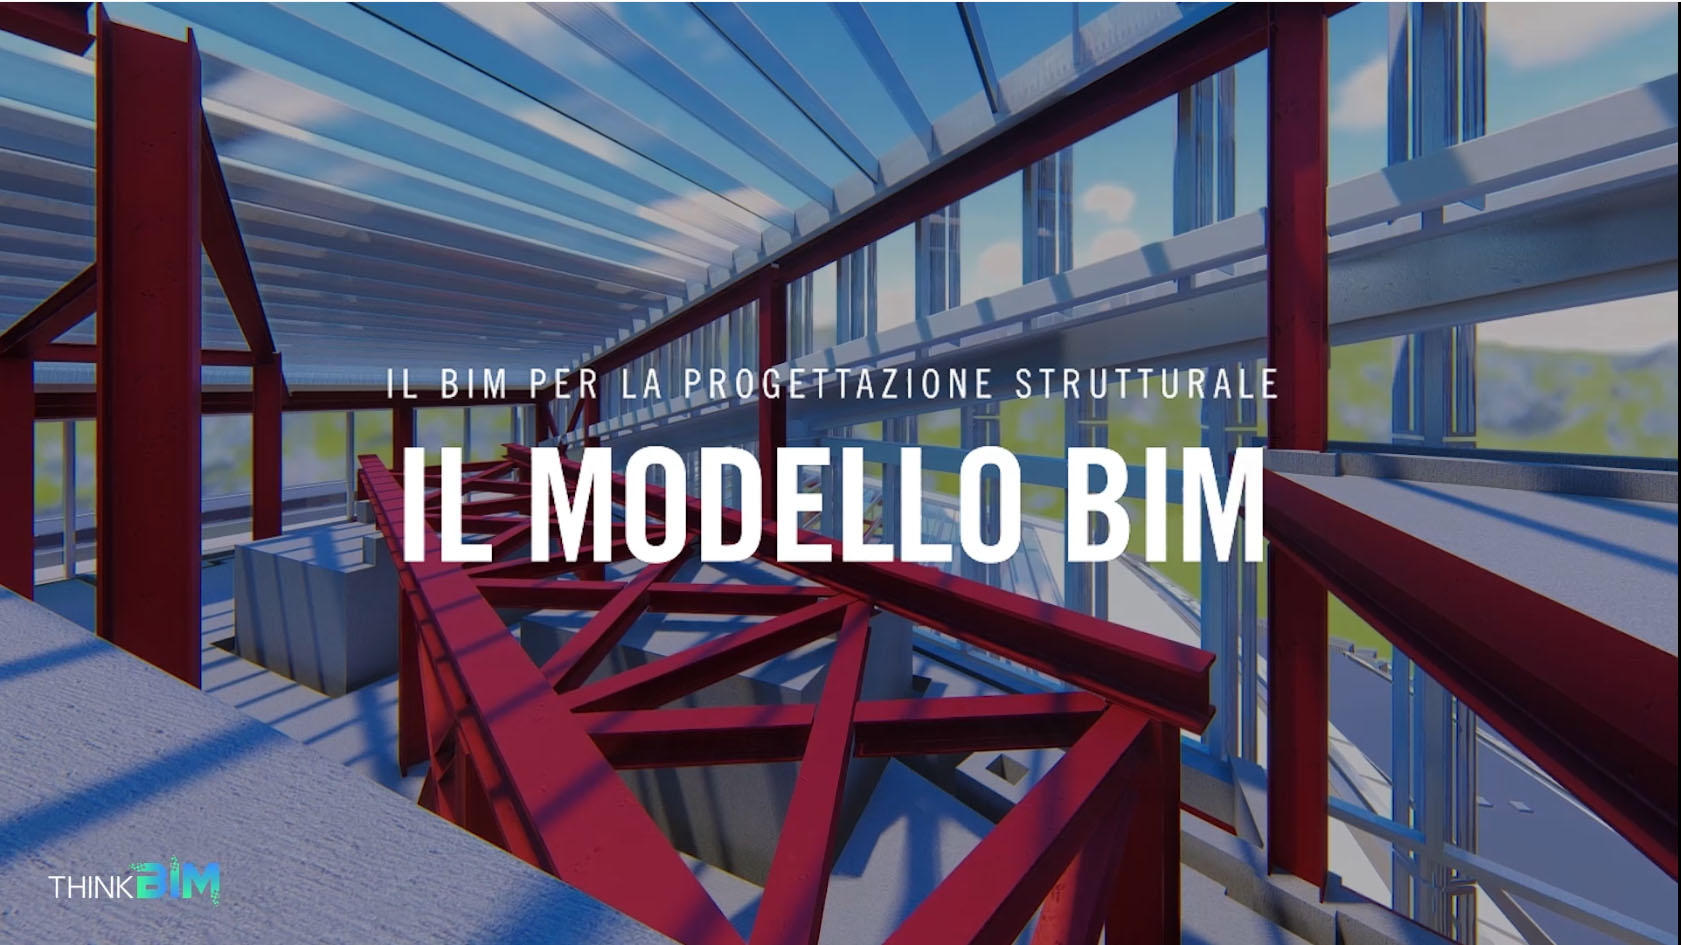 THINK BIM Video 2 – Il Bim per la progettazione strutturale